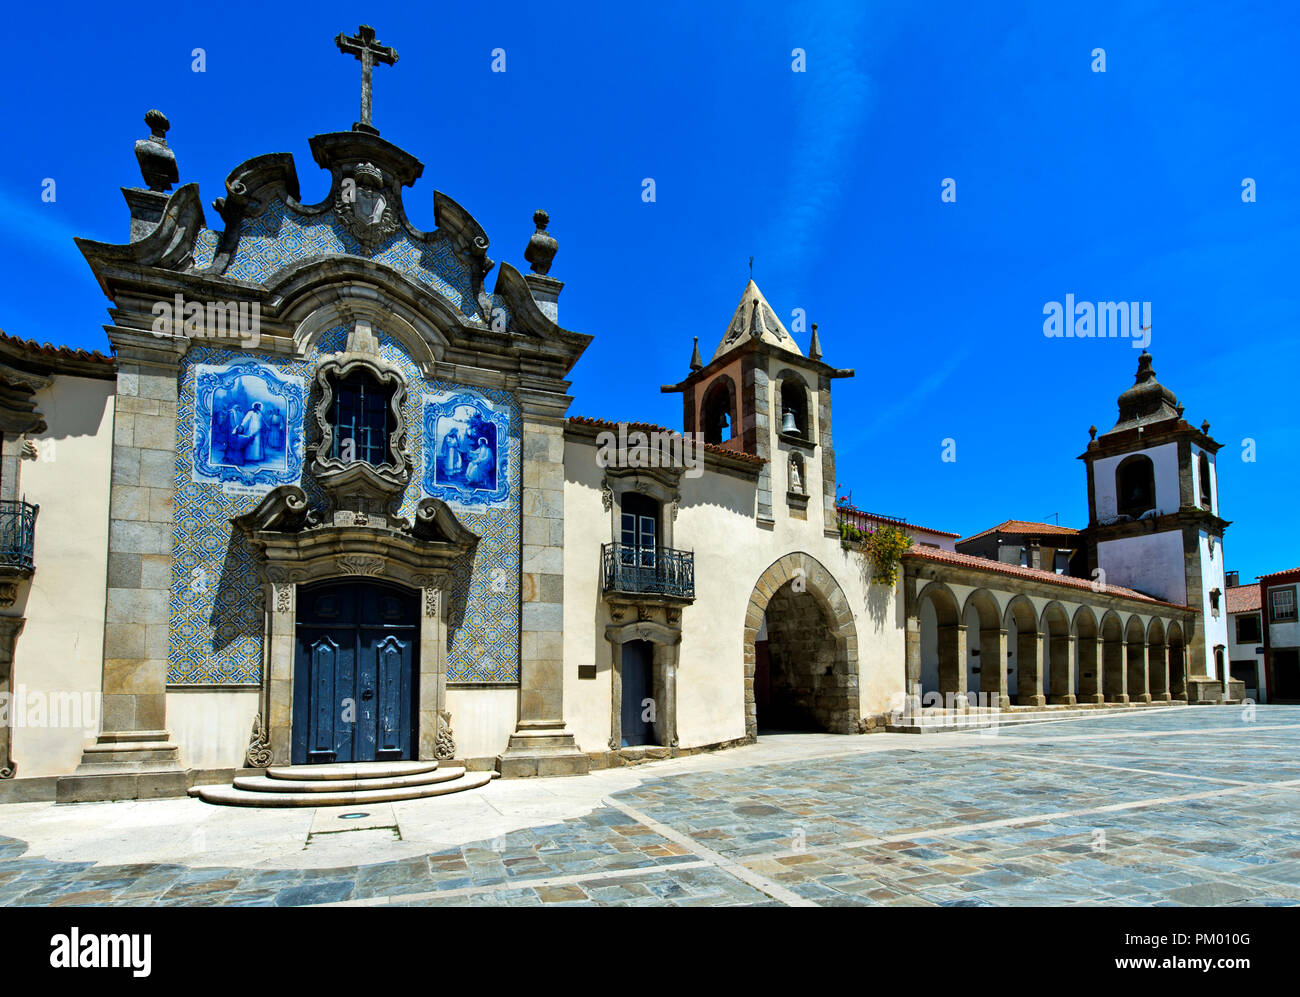 Place principale de la place de la République avec chapelle de la miséricorde, Capela da Misericórdia, porte de ville, les arcades et la tour de l'horloge, Sao Joao da Pesqueira, Portugal Banque D'Images